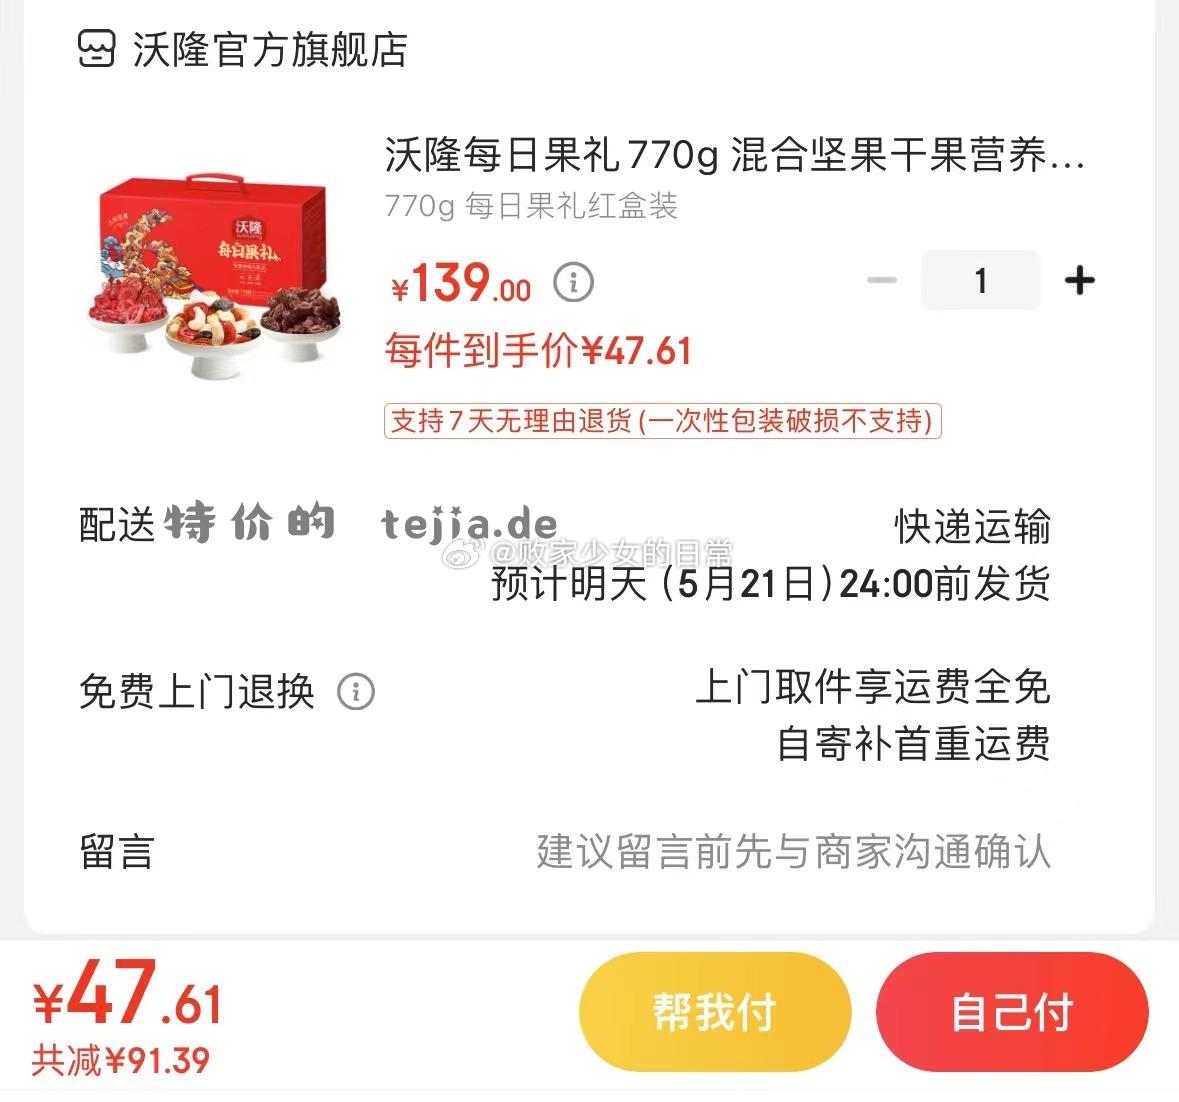 沃隆每日果礼770g红盒装 领25劵 叠加标题下方99-15劵 plus到手47.61 - 特价的